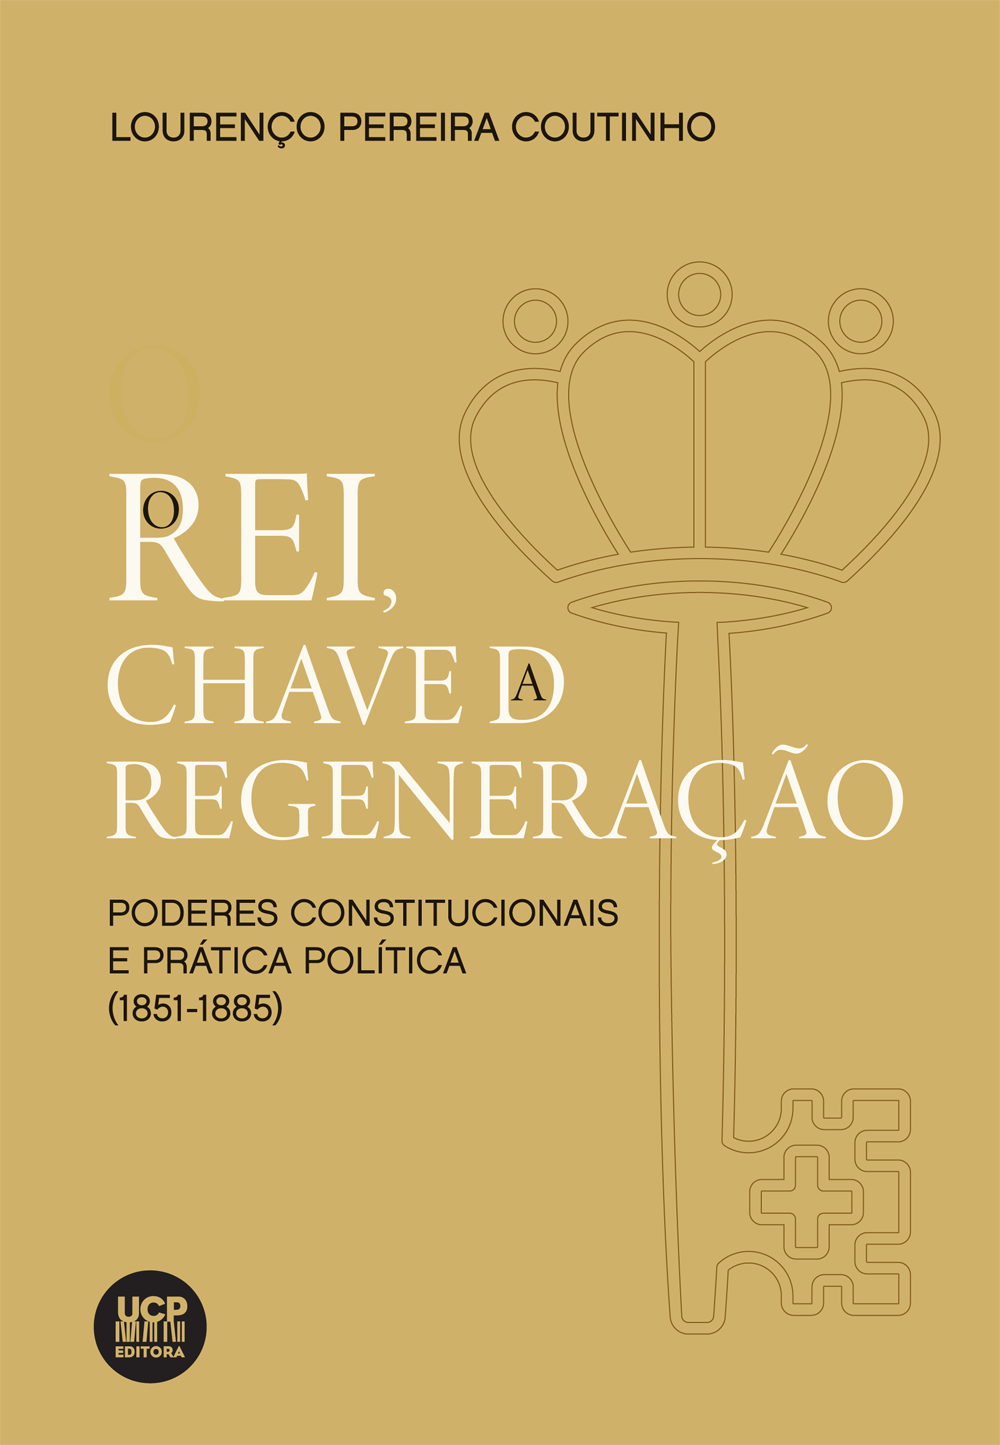 O REI, CHAVE DA REGENERAÇÃO - 
poderes constitucionais e prática política (1851-1885)